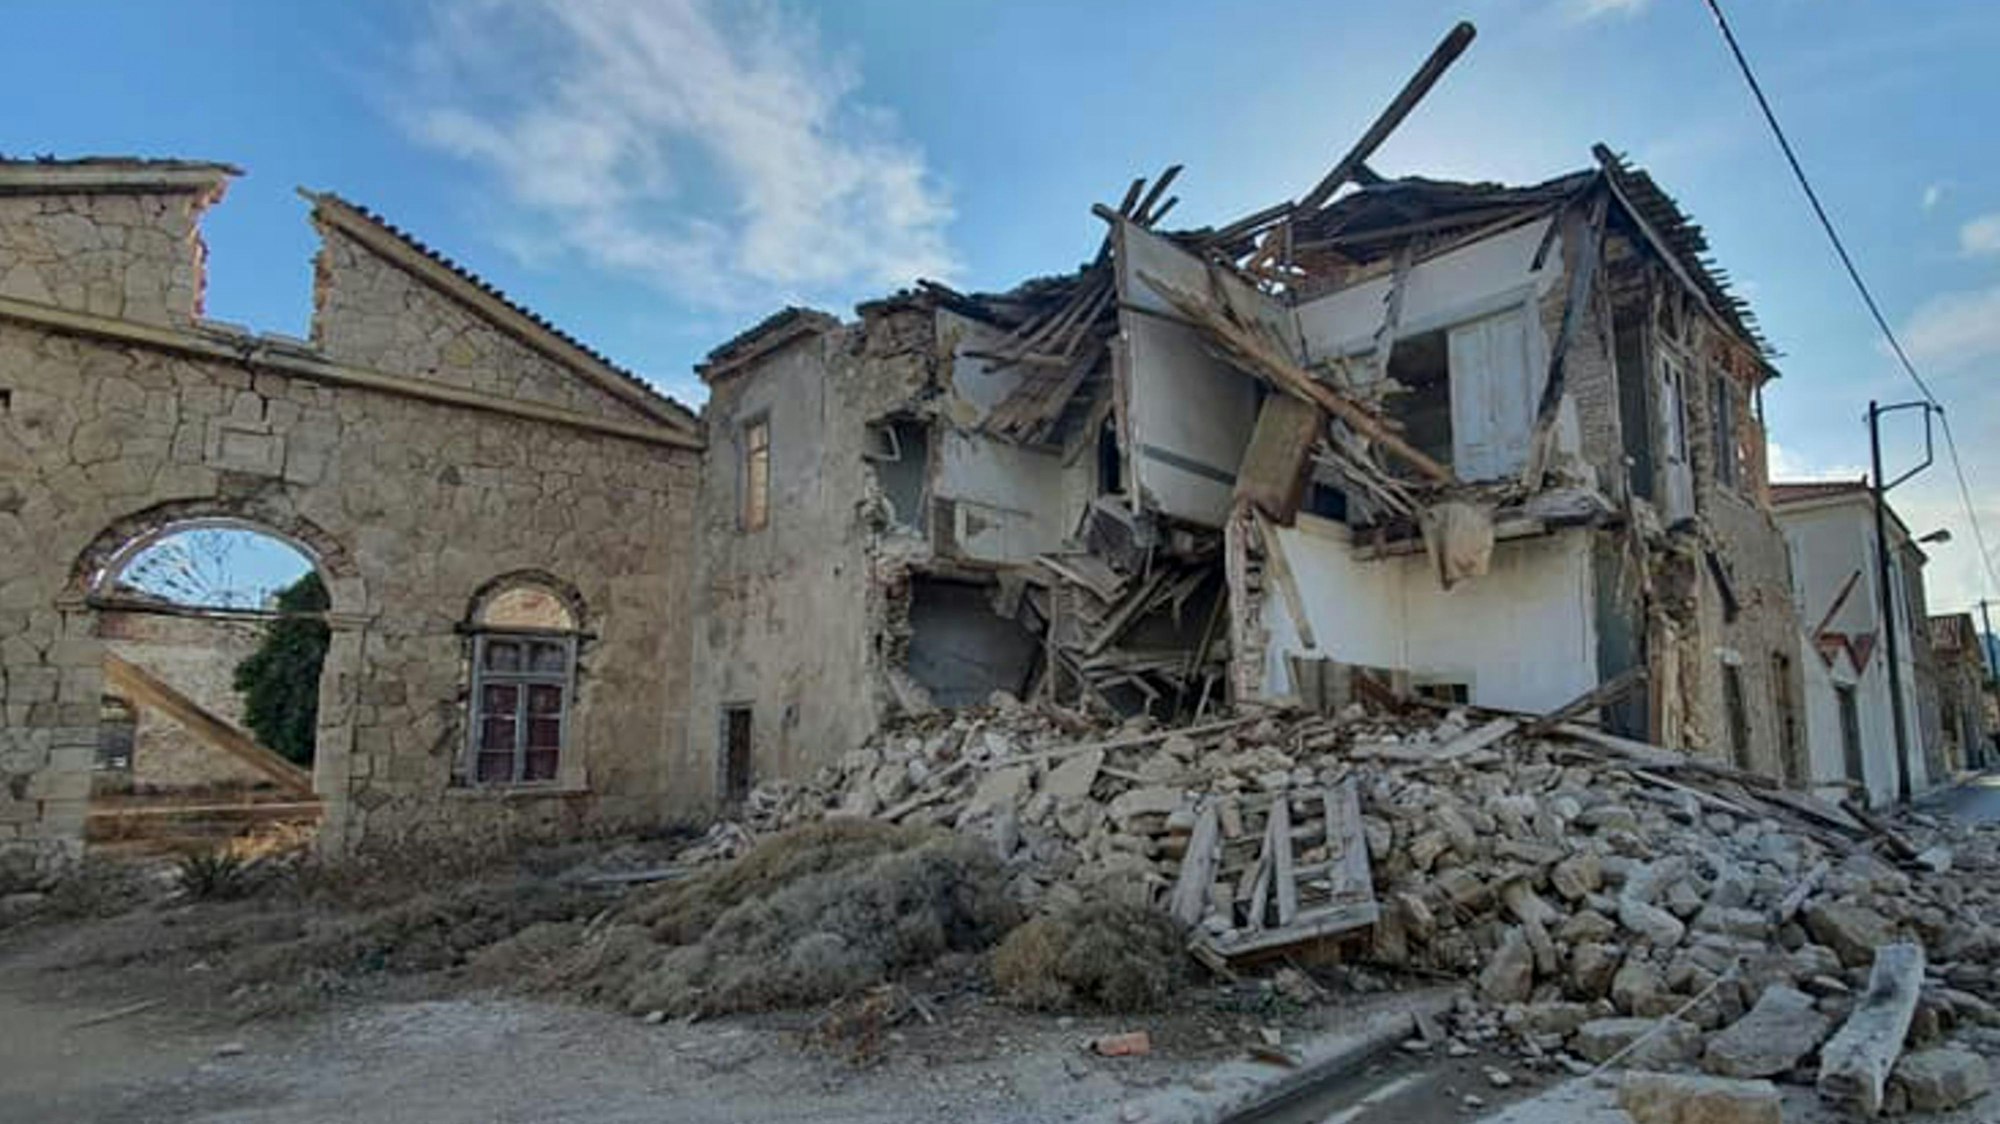 So sah es im Oktober 2020 auf der Samos aus, nachdem ein Erdbeben die griechische Insel erschüttert hatte. So schlimm waren die Beben dieses Mal wohl nicht.